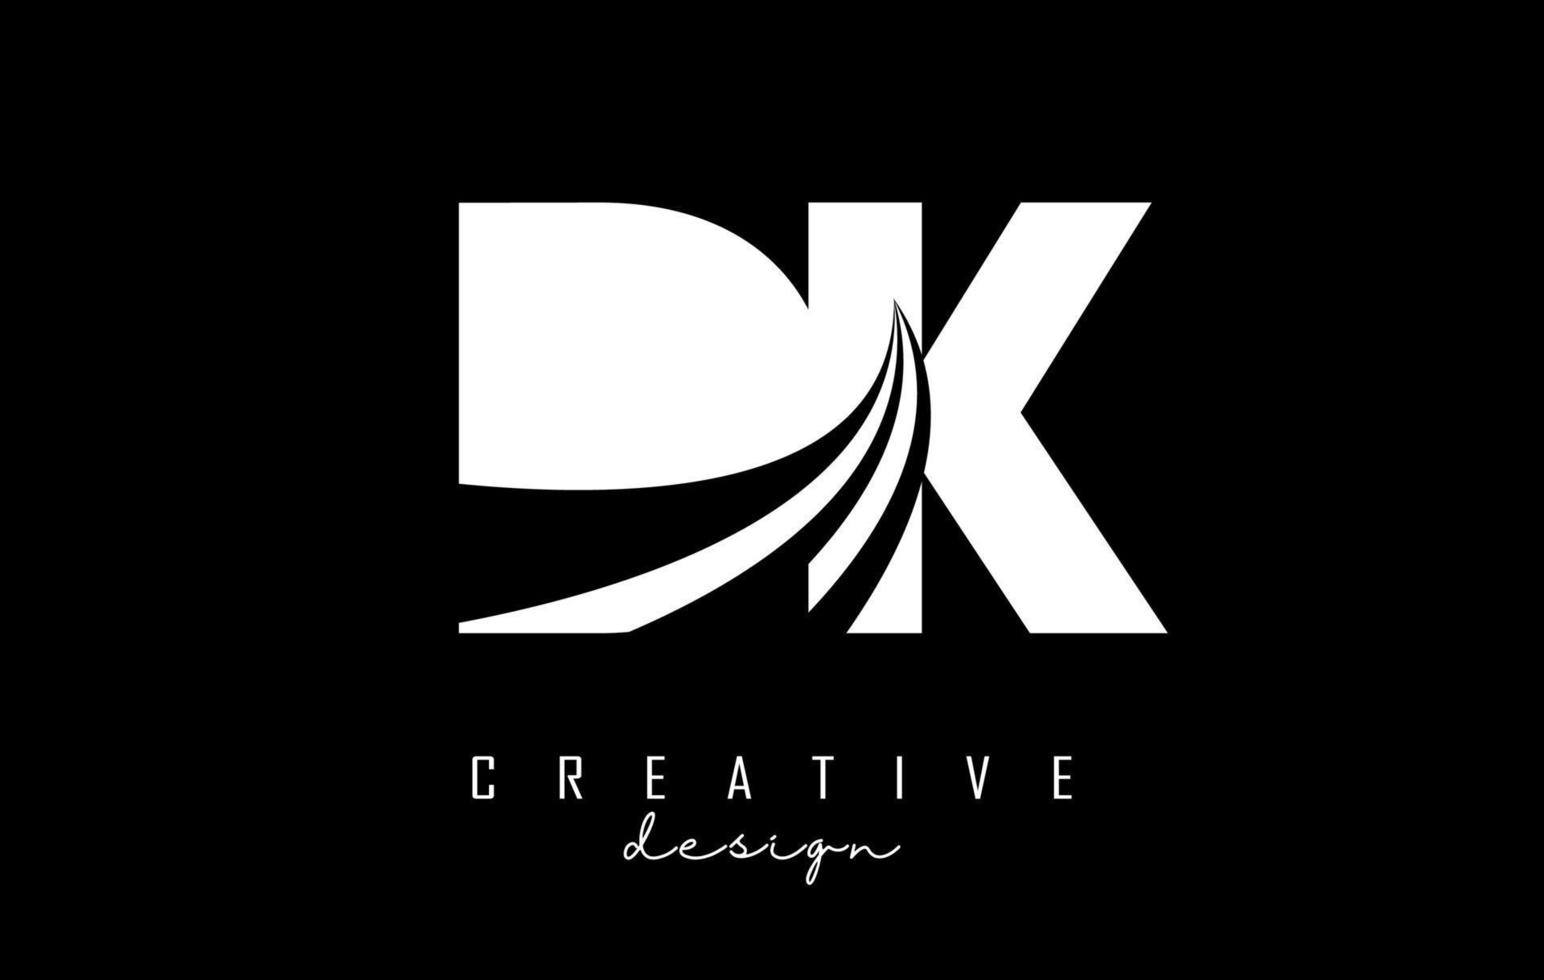 Logotipo creativo de letras blancas dk dk con líneas principales y diseño de concepto de carretera. letras con diseño geométrico. vector